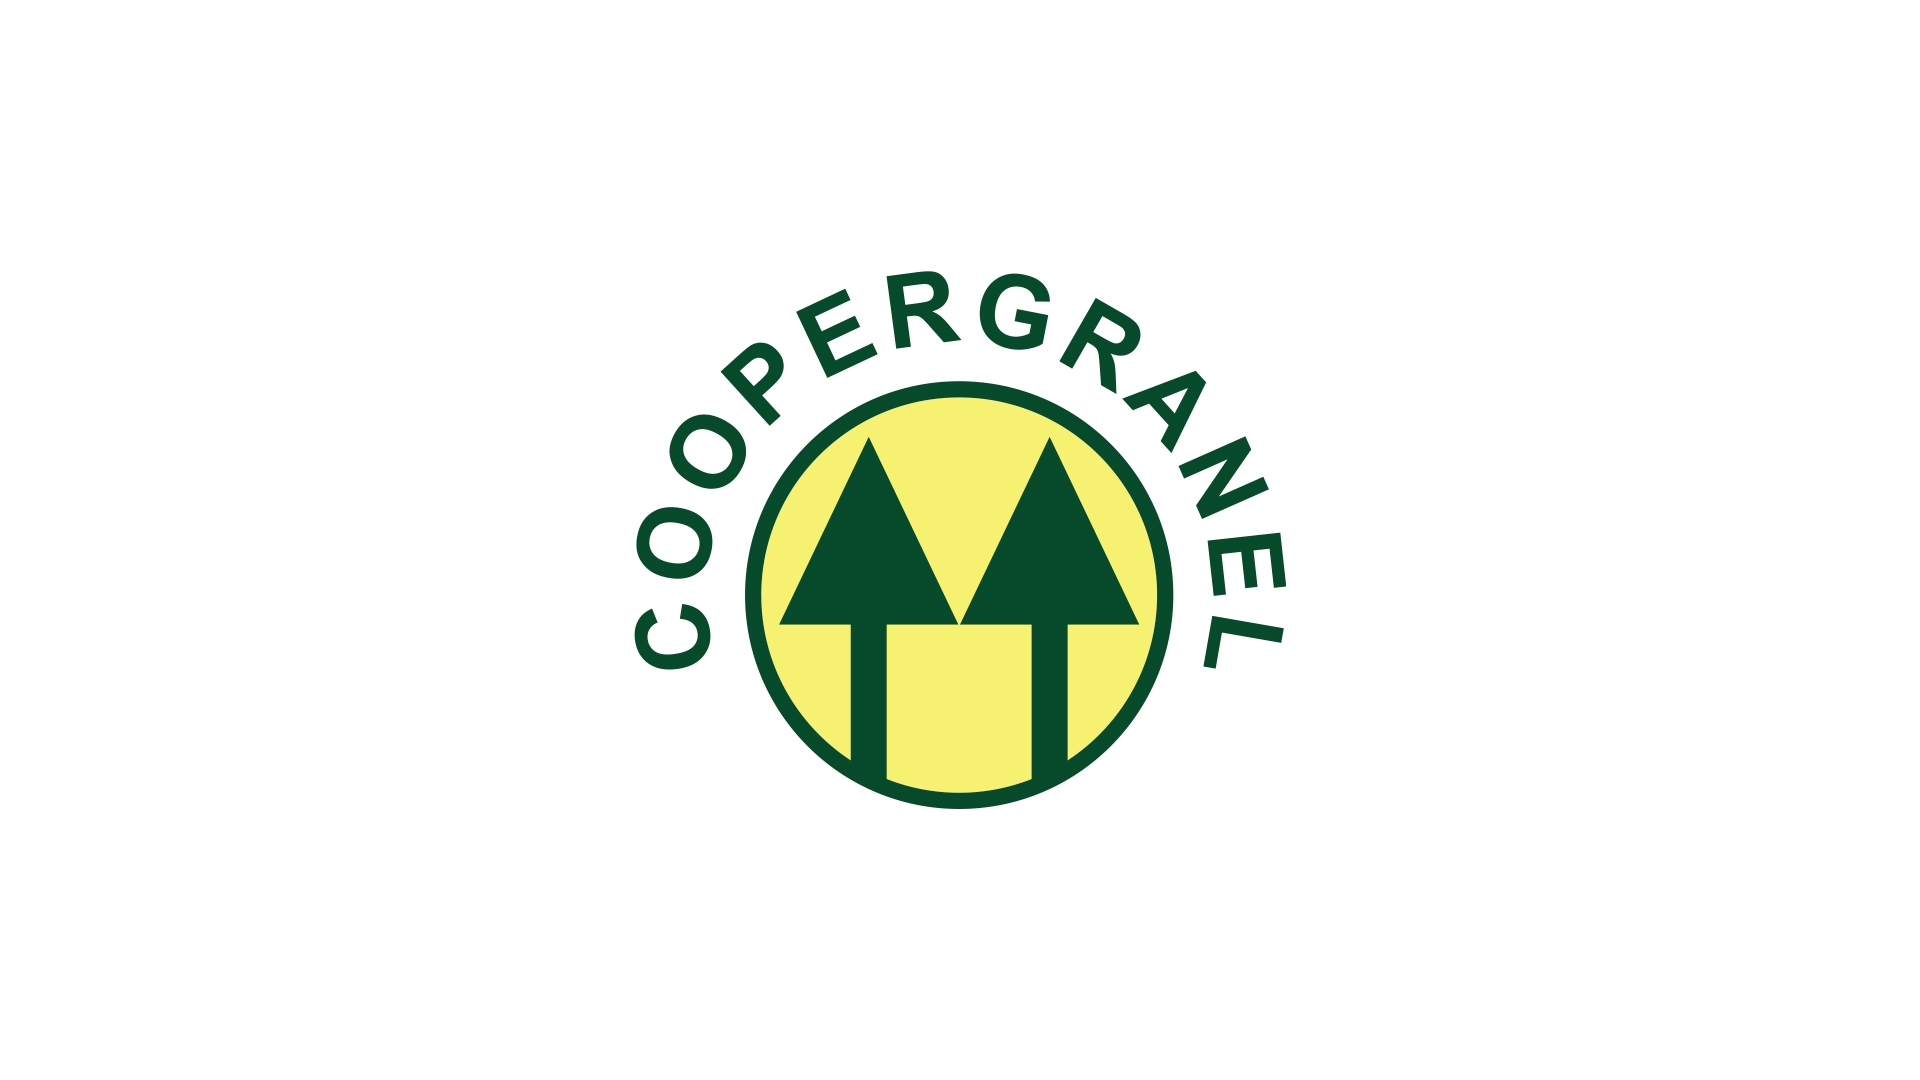 Coopergranel